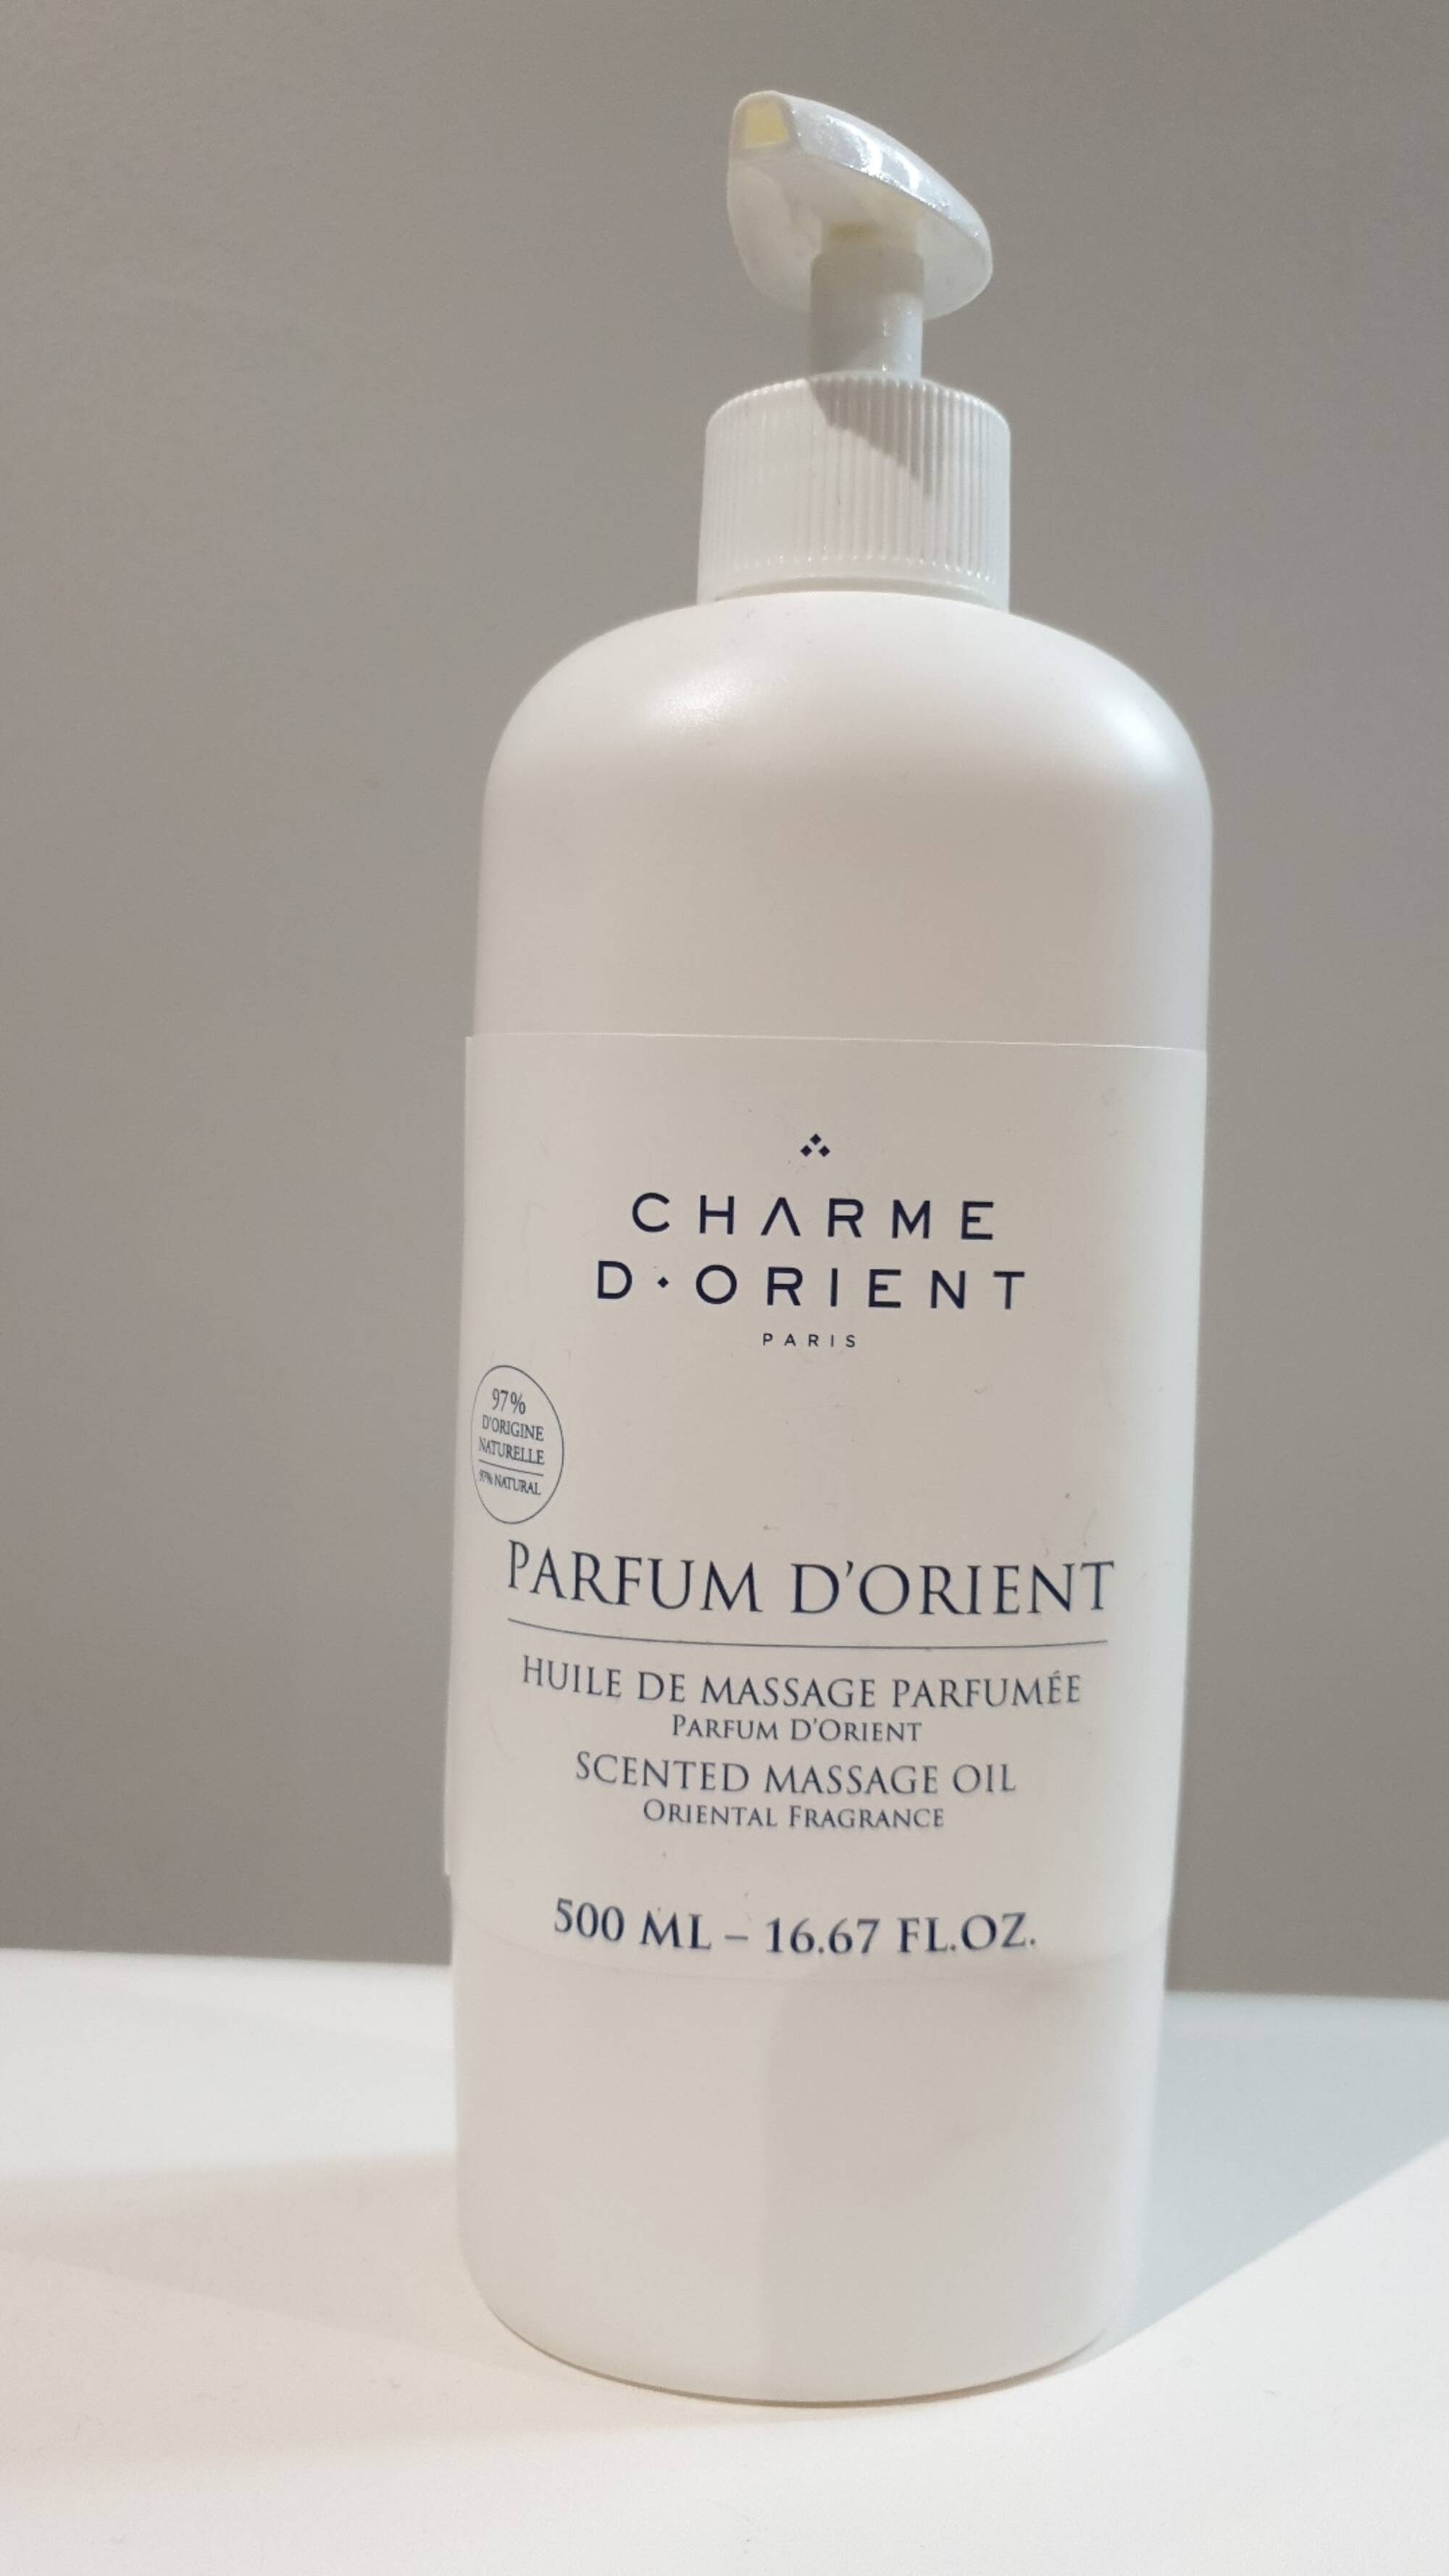 CHARME D'ORIENT - Parfum d'Orient - Huile de massage parfumée